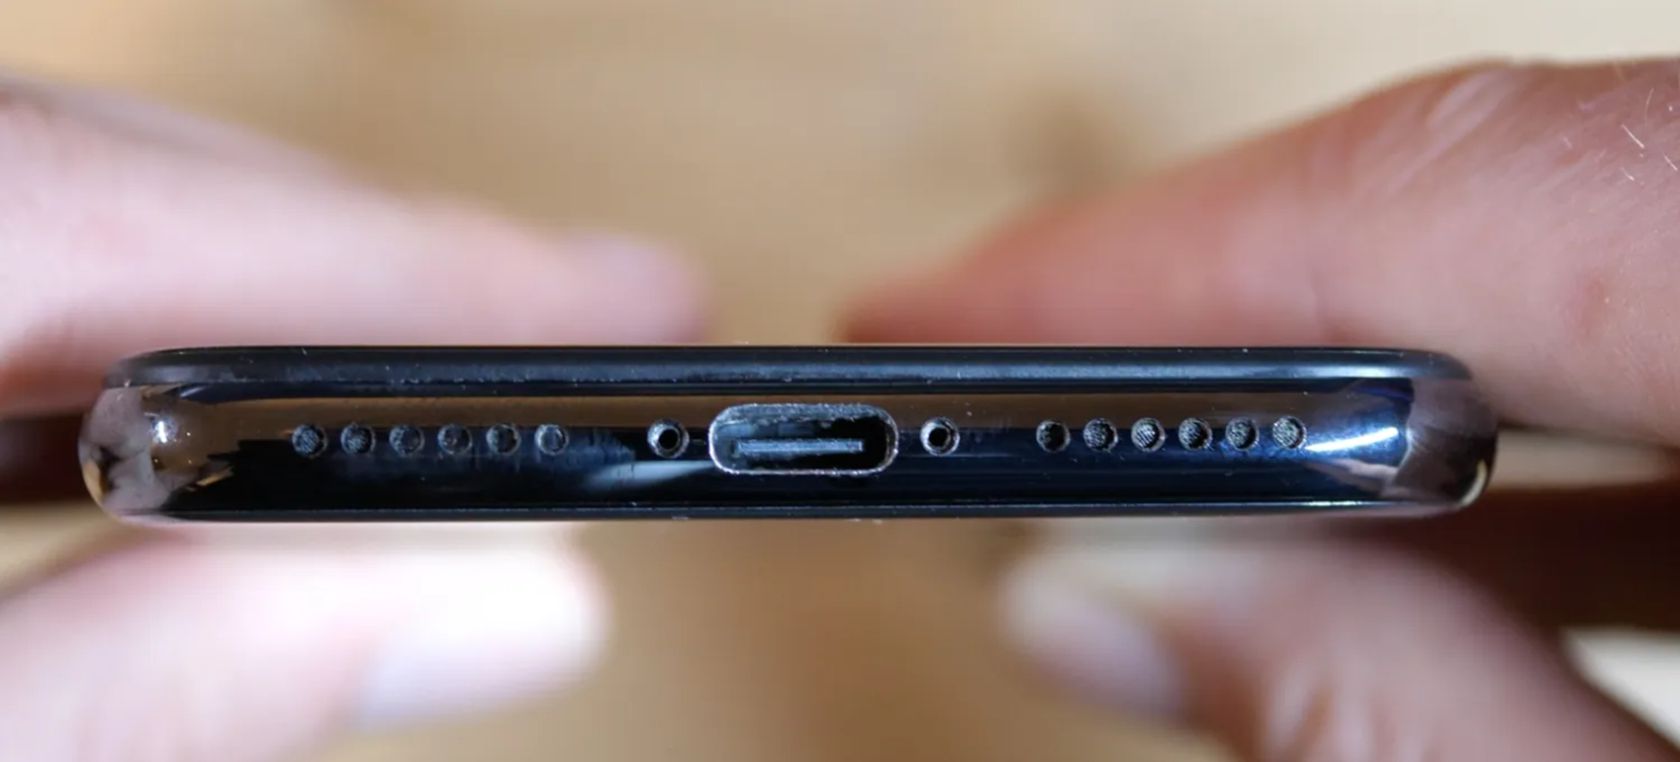 Pone puerto USB-C a su iPhone y ya lleva más 100.000 dólares pujados en eBay